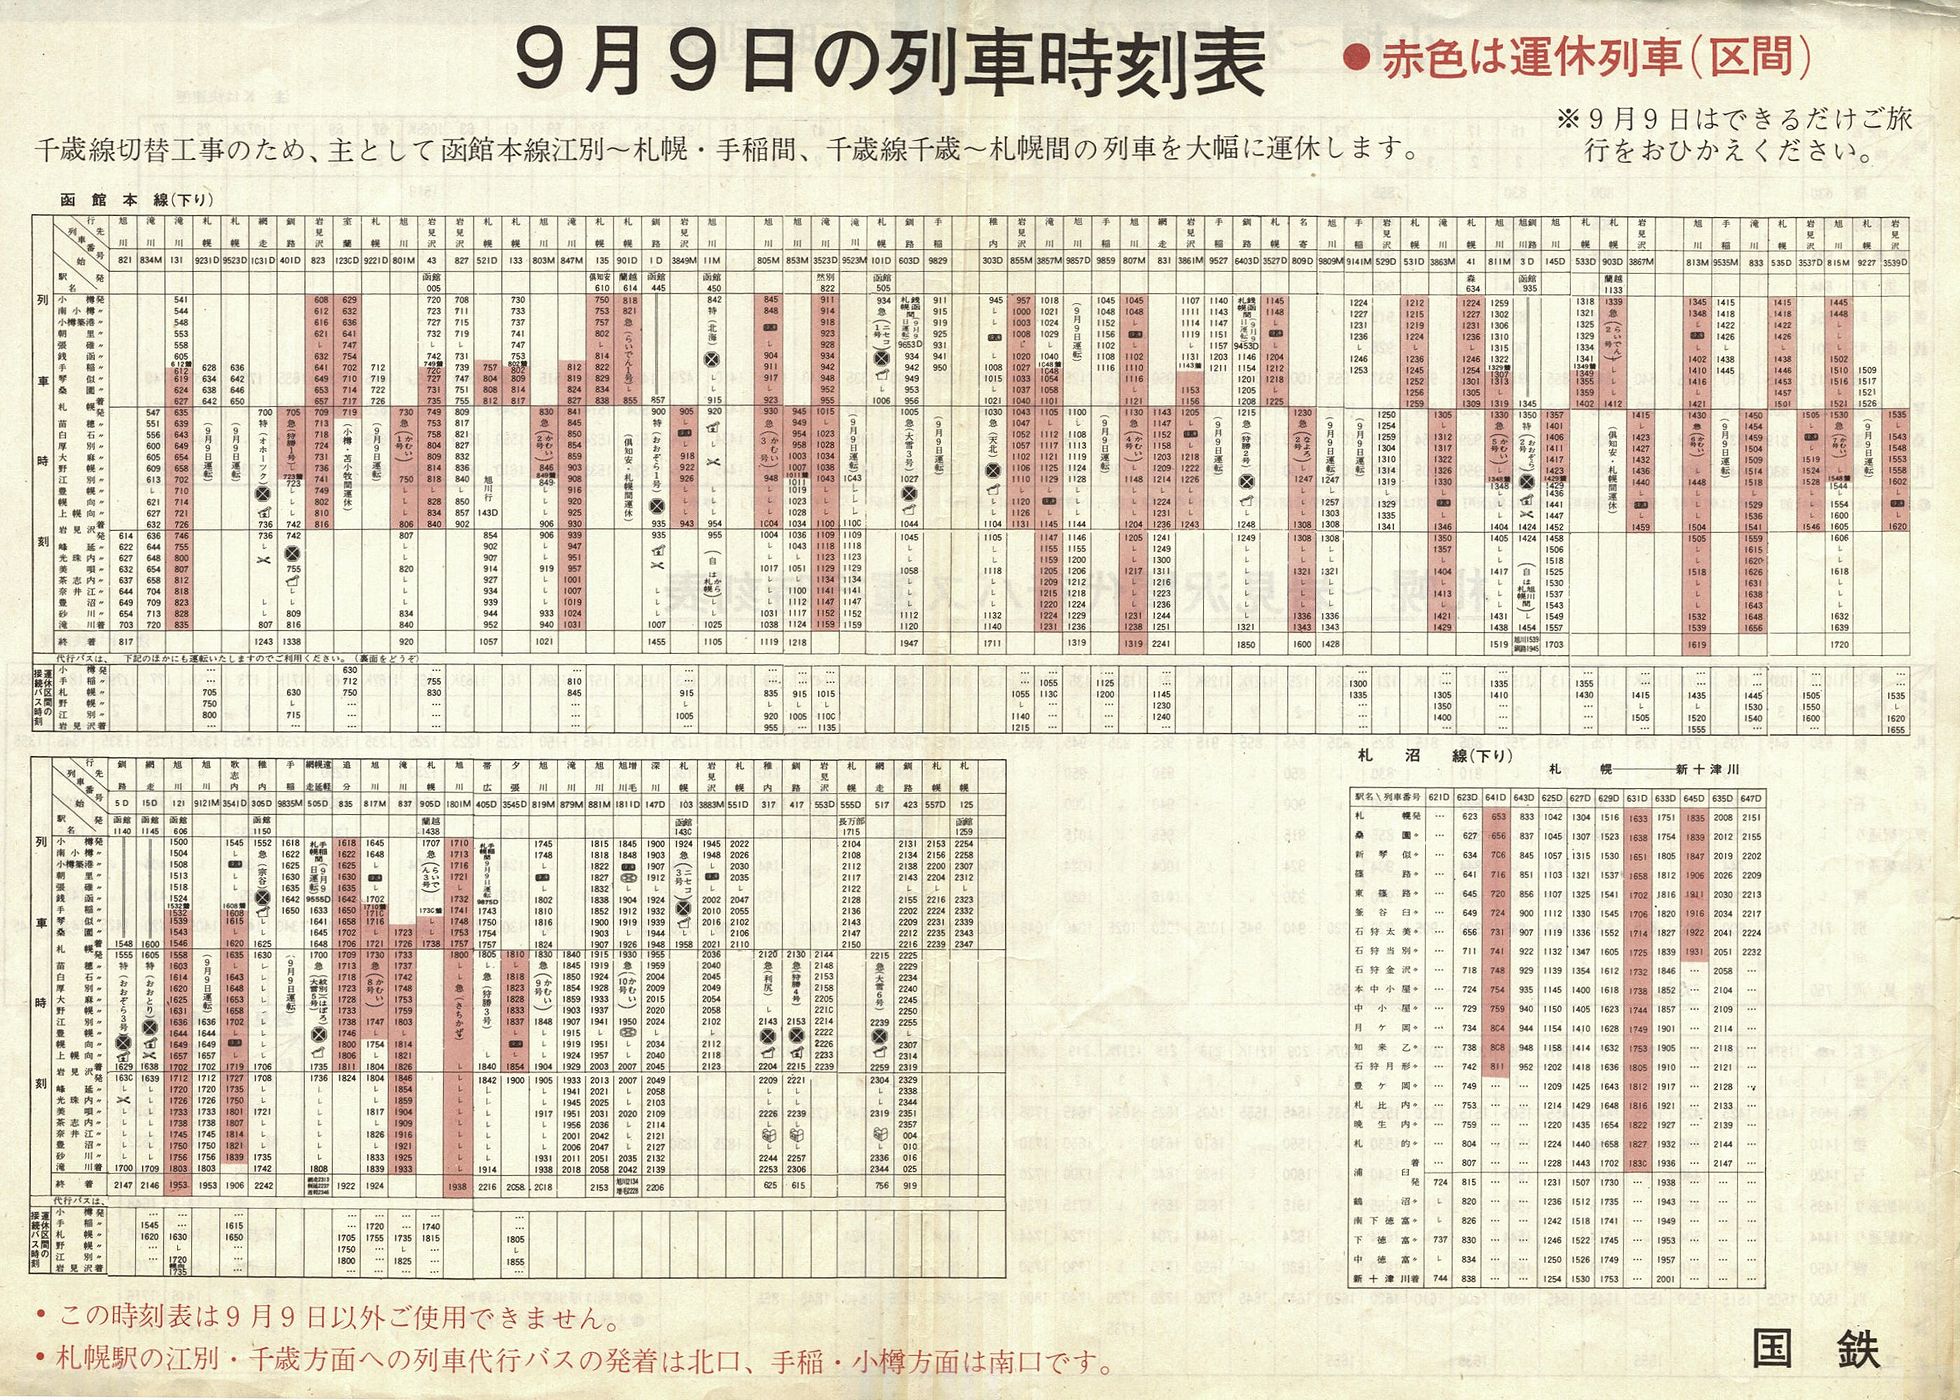 1973-09-09実施_国鉄千歳線切替_函館本線下り列車時刻表